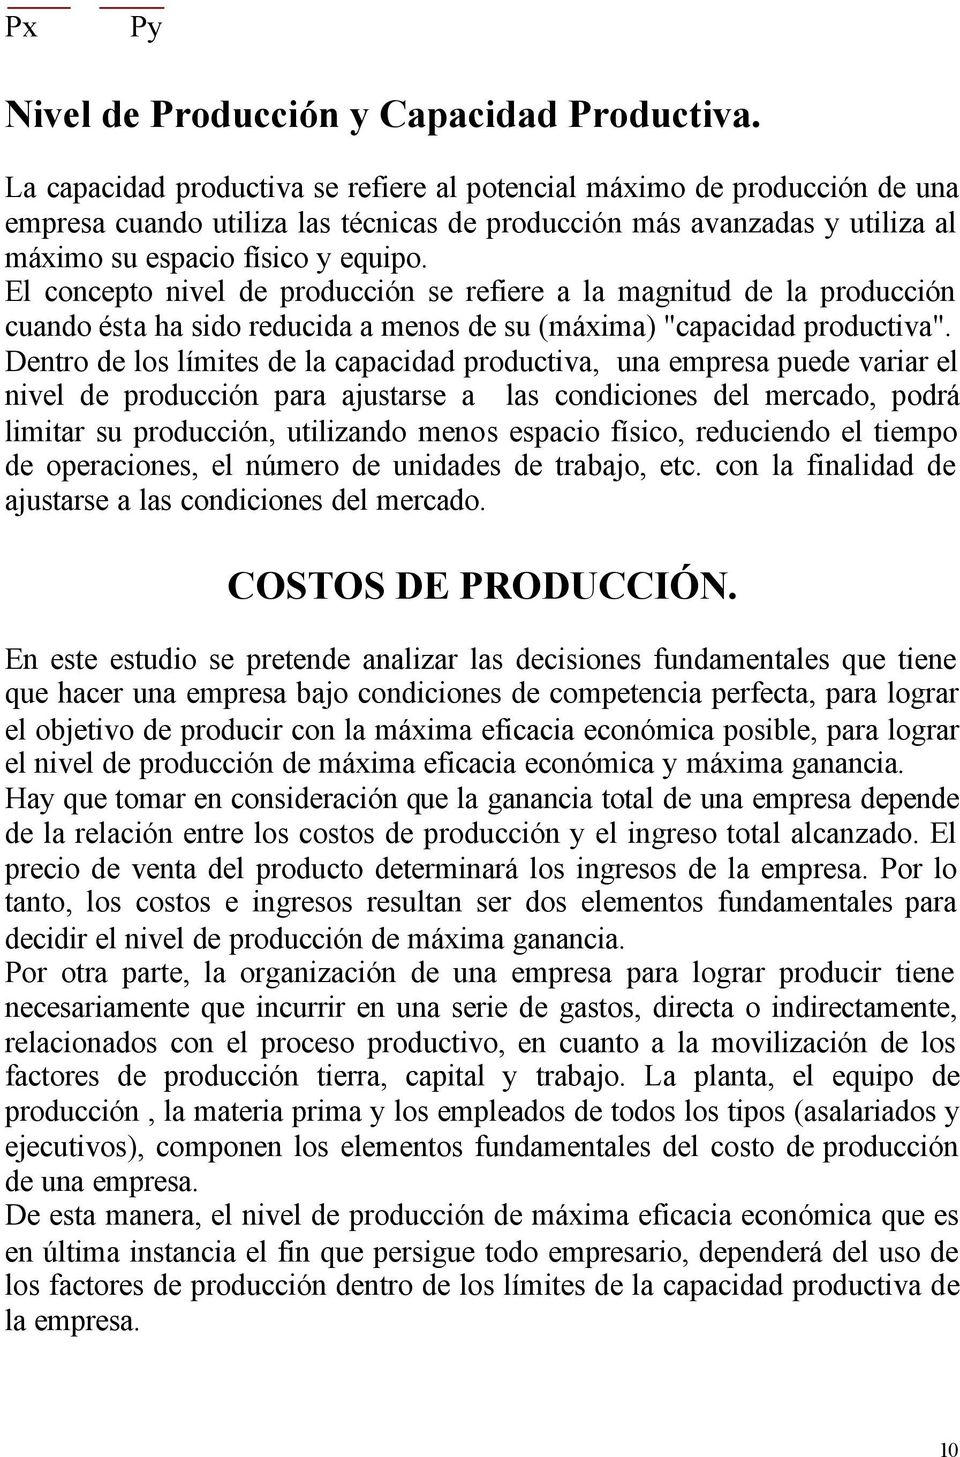 El concepto nivel de producción se refiere a la magnitud de la producción cuando ésta ha sido reducida a menos de su (máxima) "capacidad productiva".